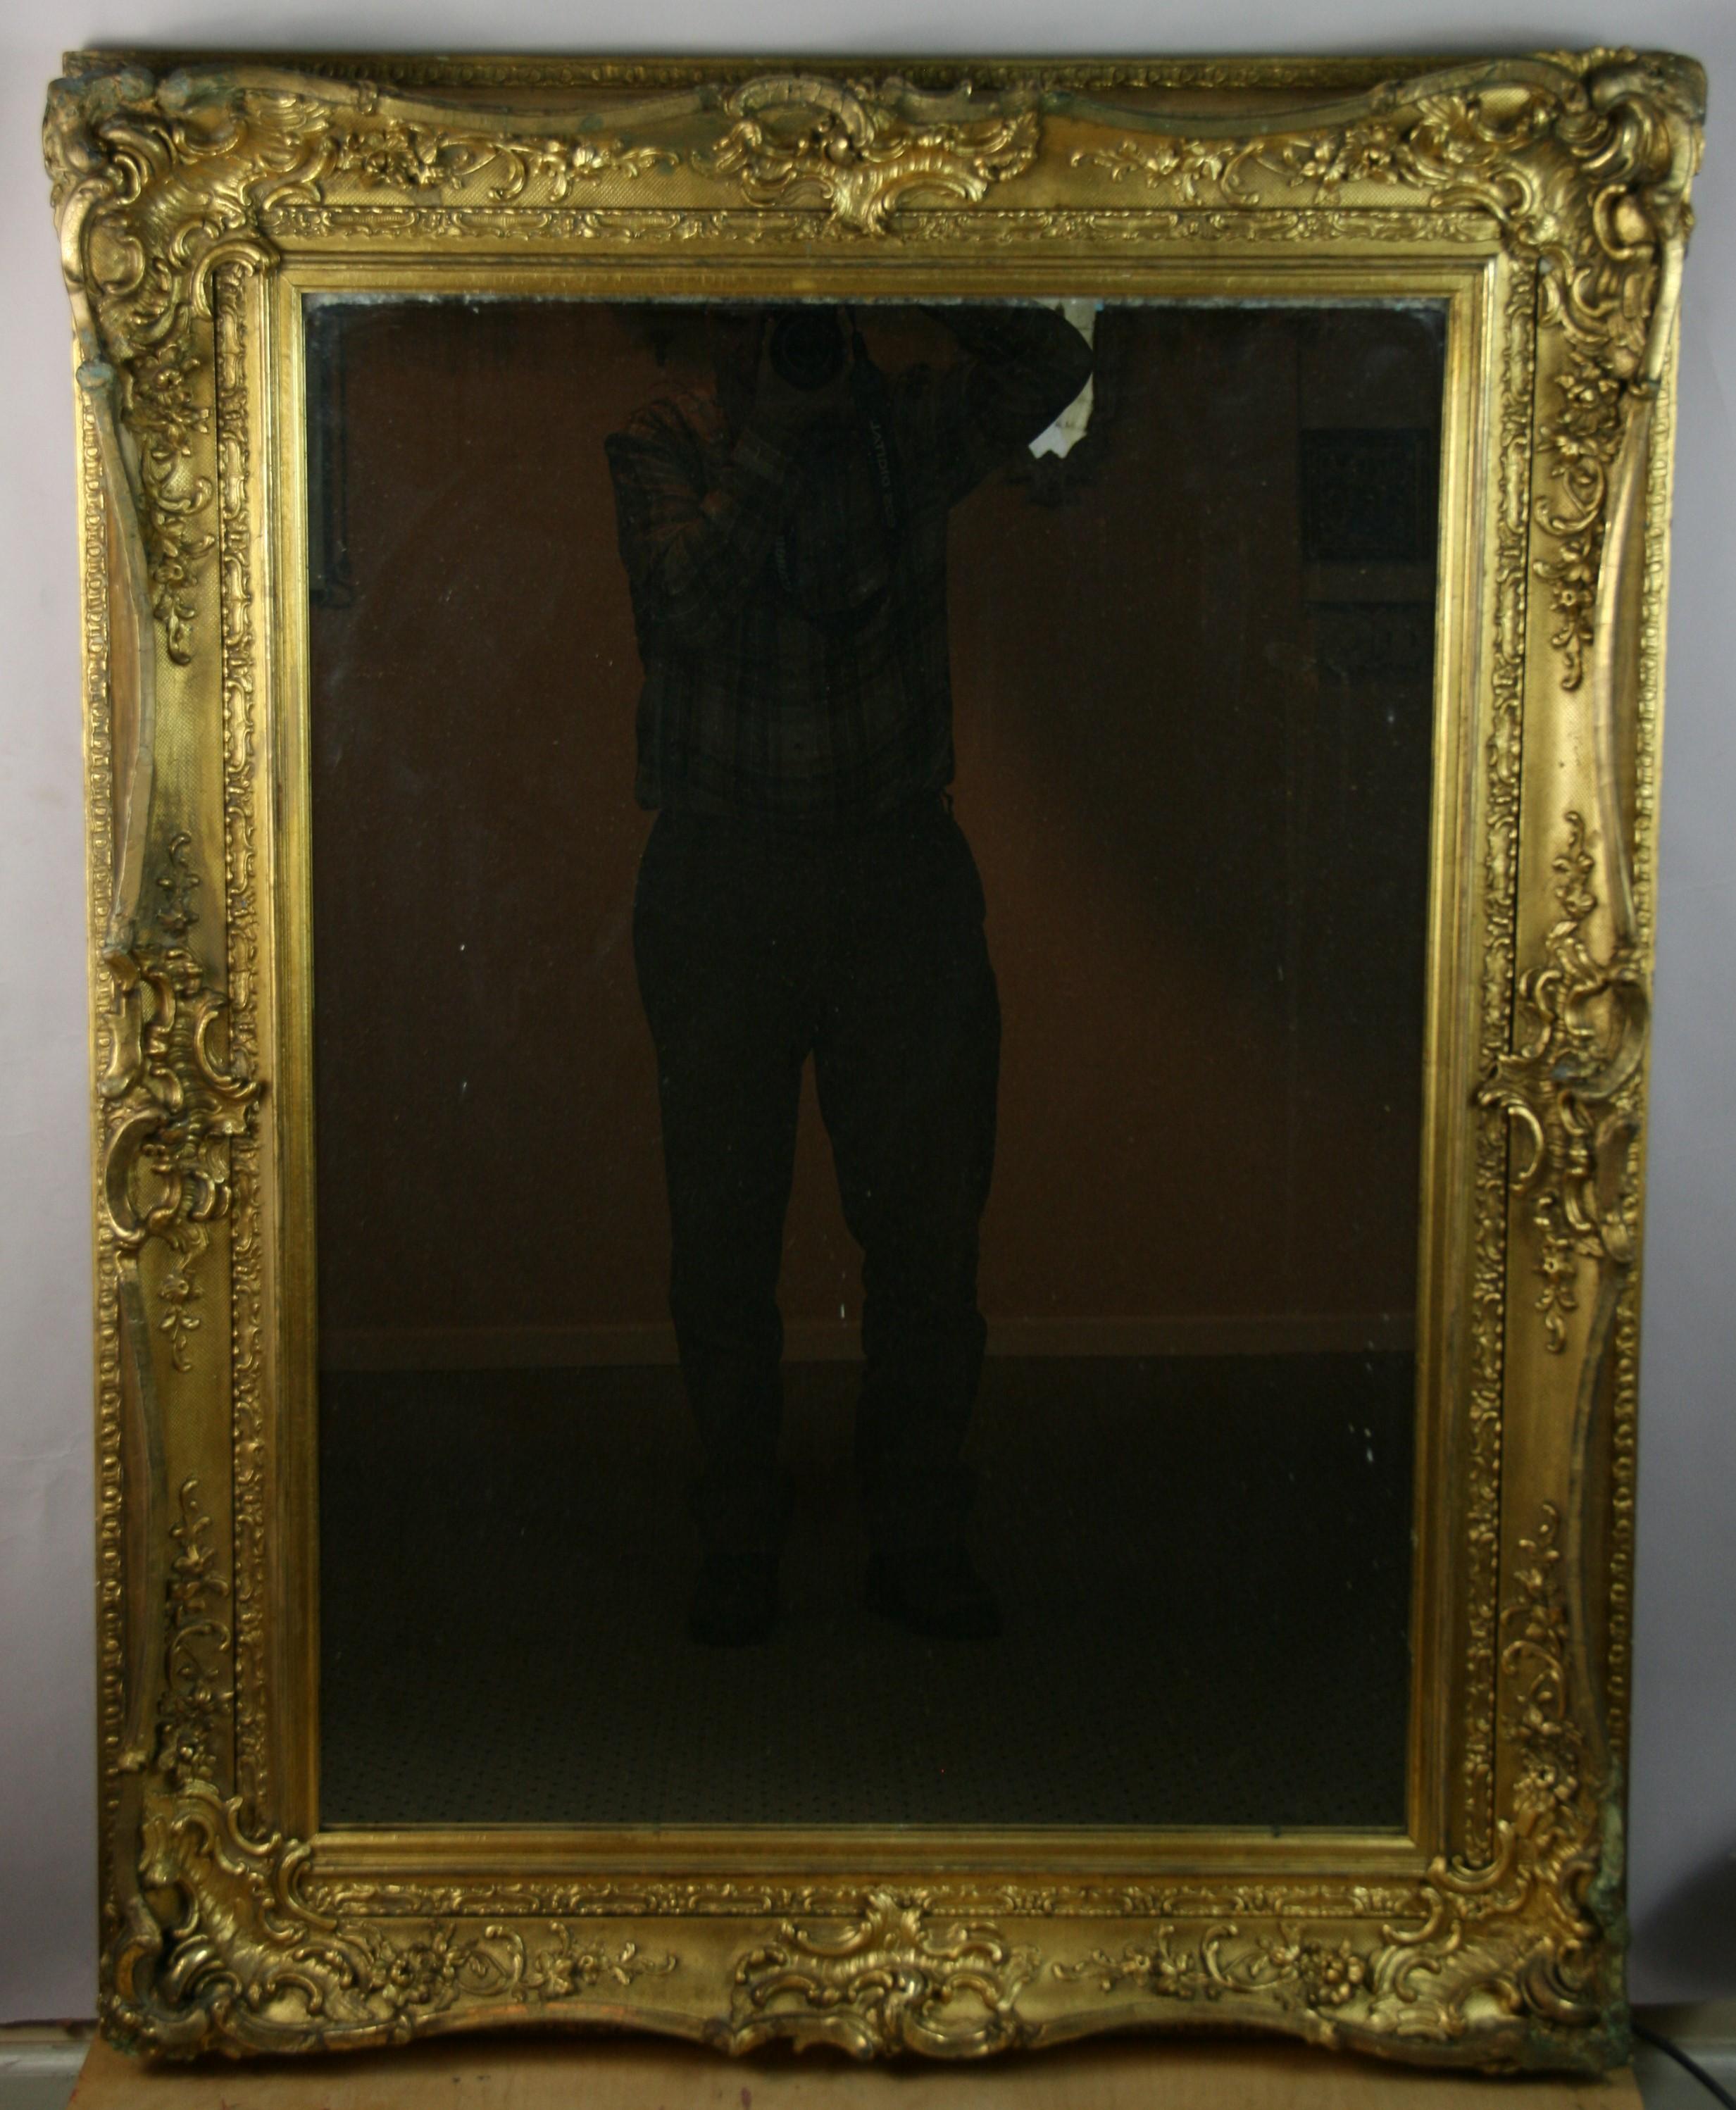 8-127 miroir en bois sculpté et gesso très détaillé
À un moment donné, le miroir a été remplacé par un nouveau miroir.